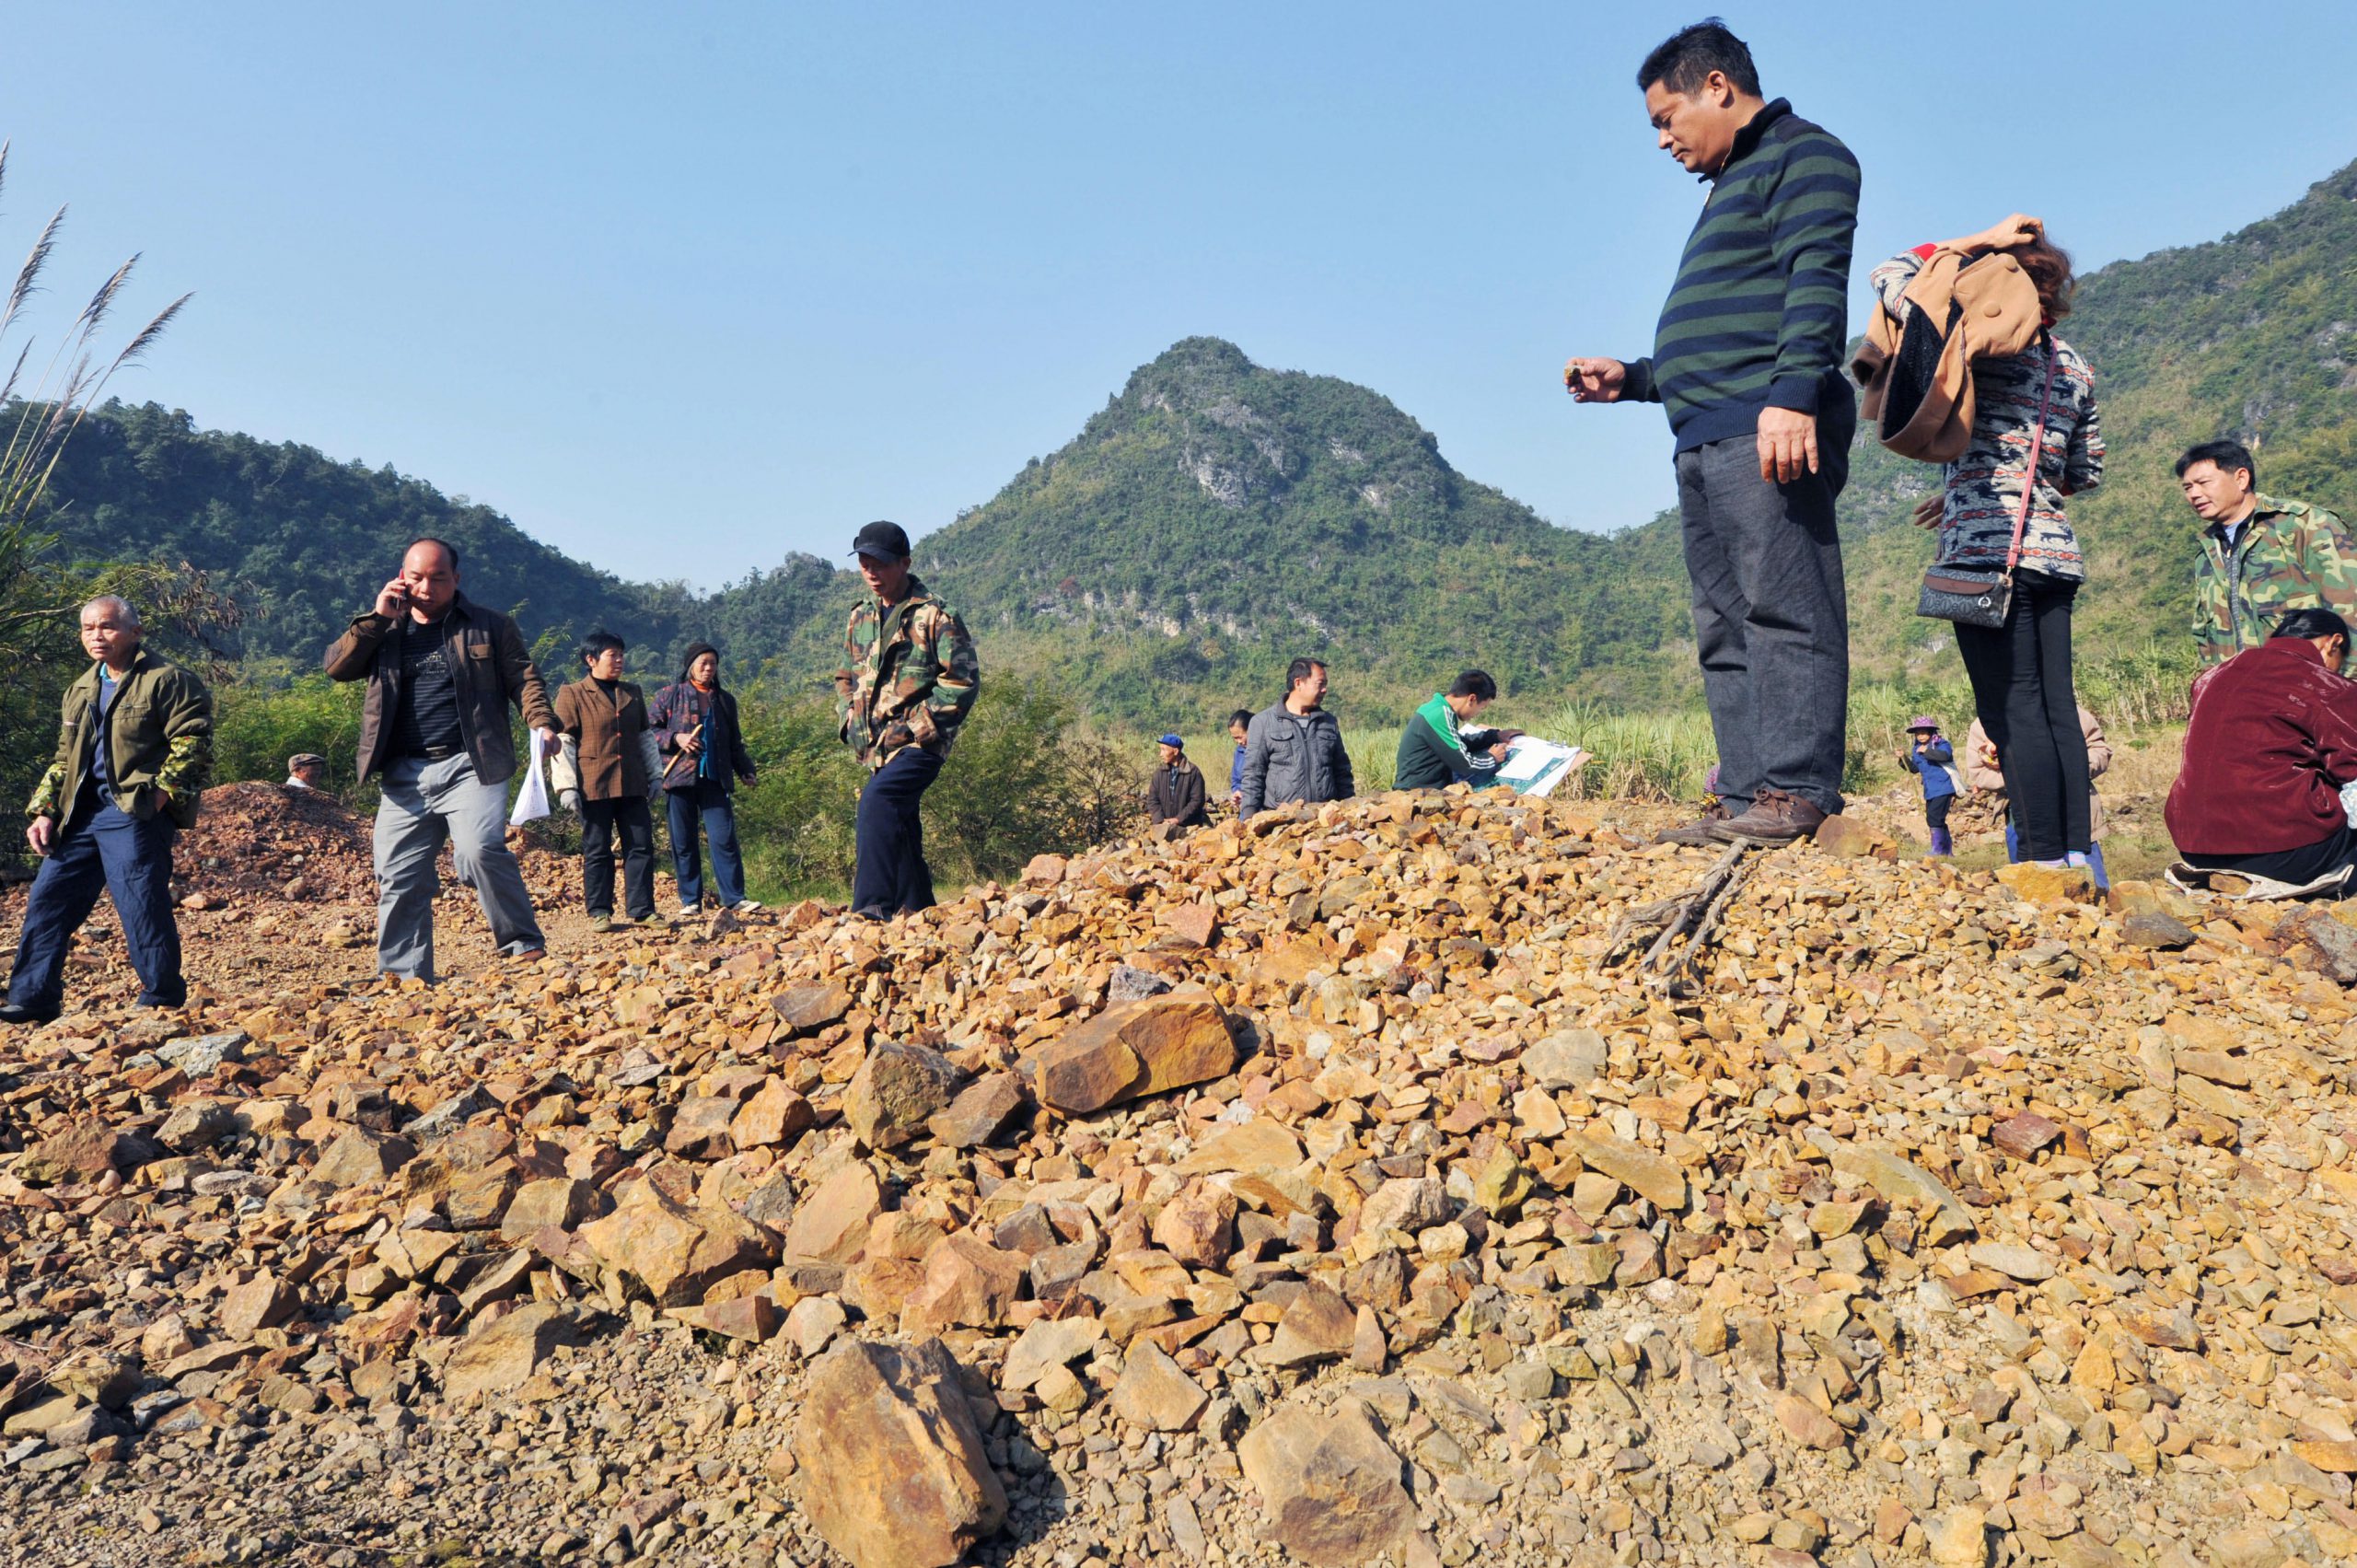 <p>广西省三合镇的村民在疑似污染的农田上。图片来源：Newscom / Alamy</p>